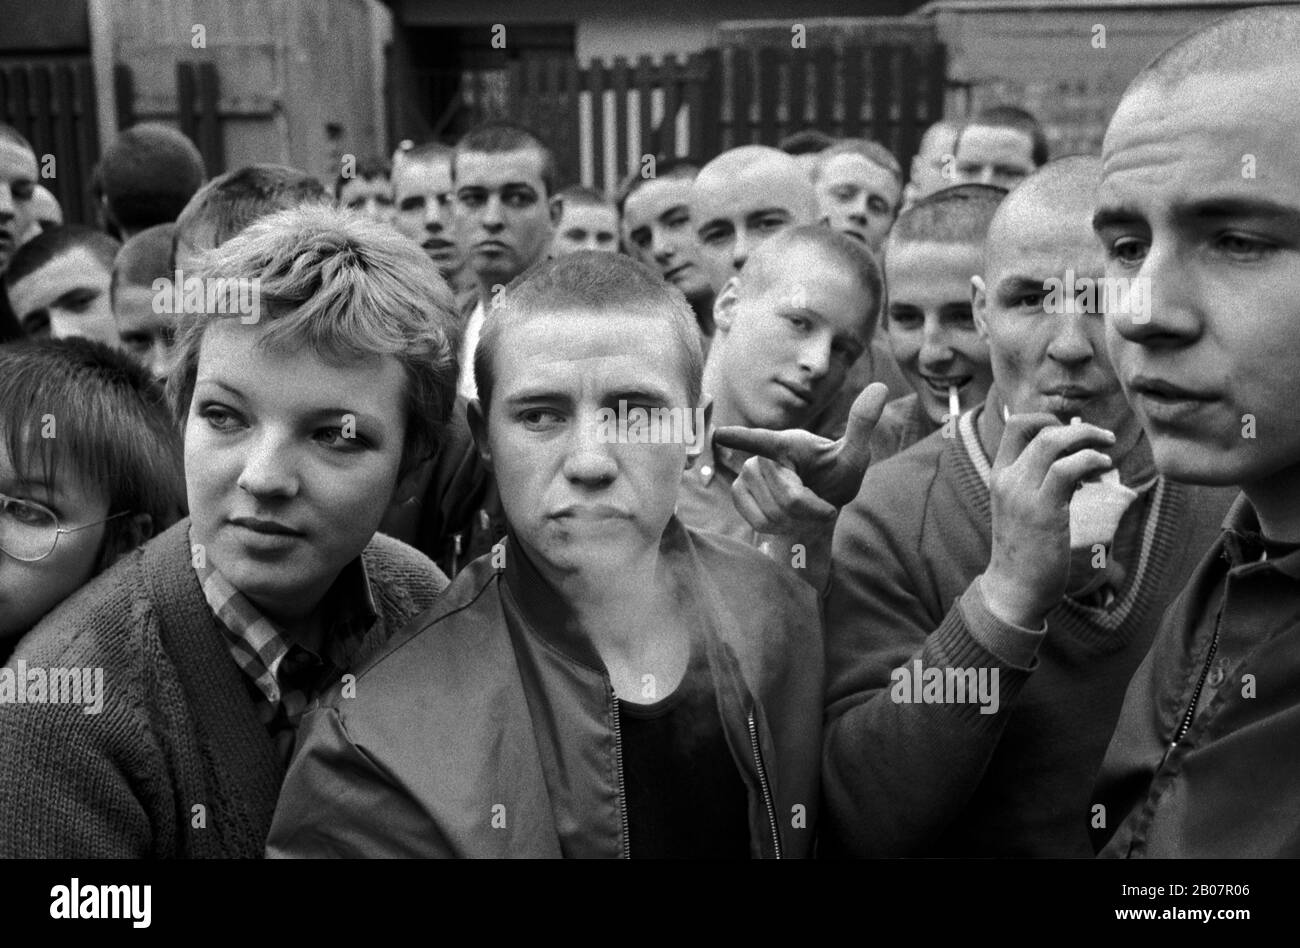 Adolescents en tête de peau un groupe de jeunes adultes hommes et femmes 1980s. Ils portent des blousons aviateur tendance. Southwark, sud de Londres Angleterre vers 1980. HOMER SYKES Banque D'Images